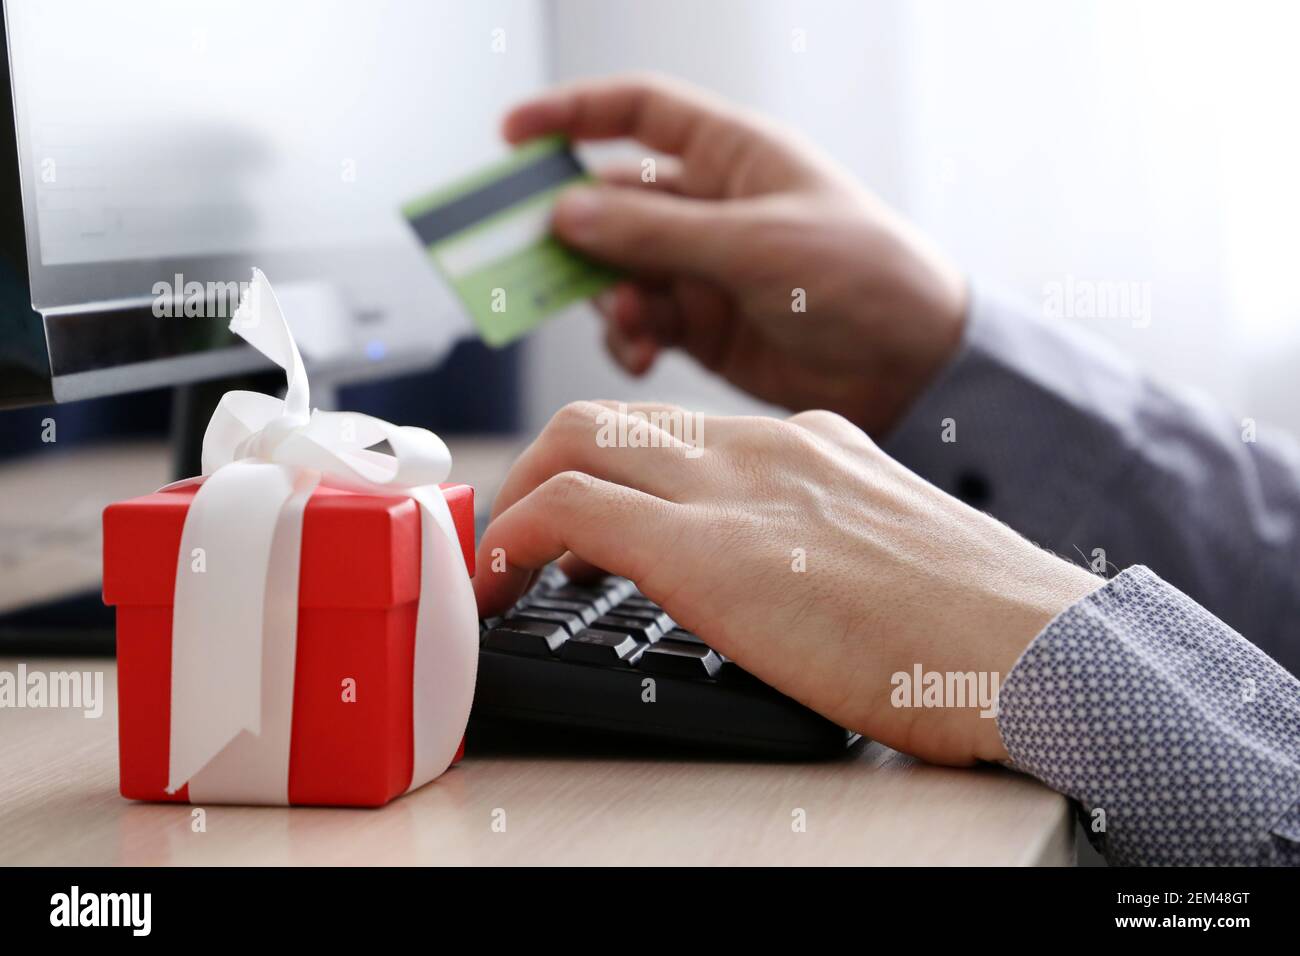 Homme avec carte de crédit assis sur le clavier de PC et boîte cadeau rouge. Concept d'achat d'un cadeau, d'achat en ligne et de paiement Banque D'Images